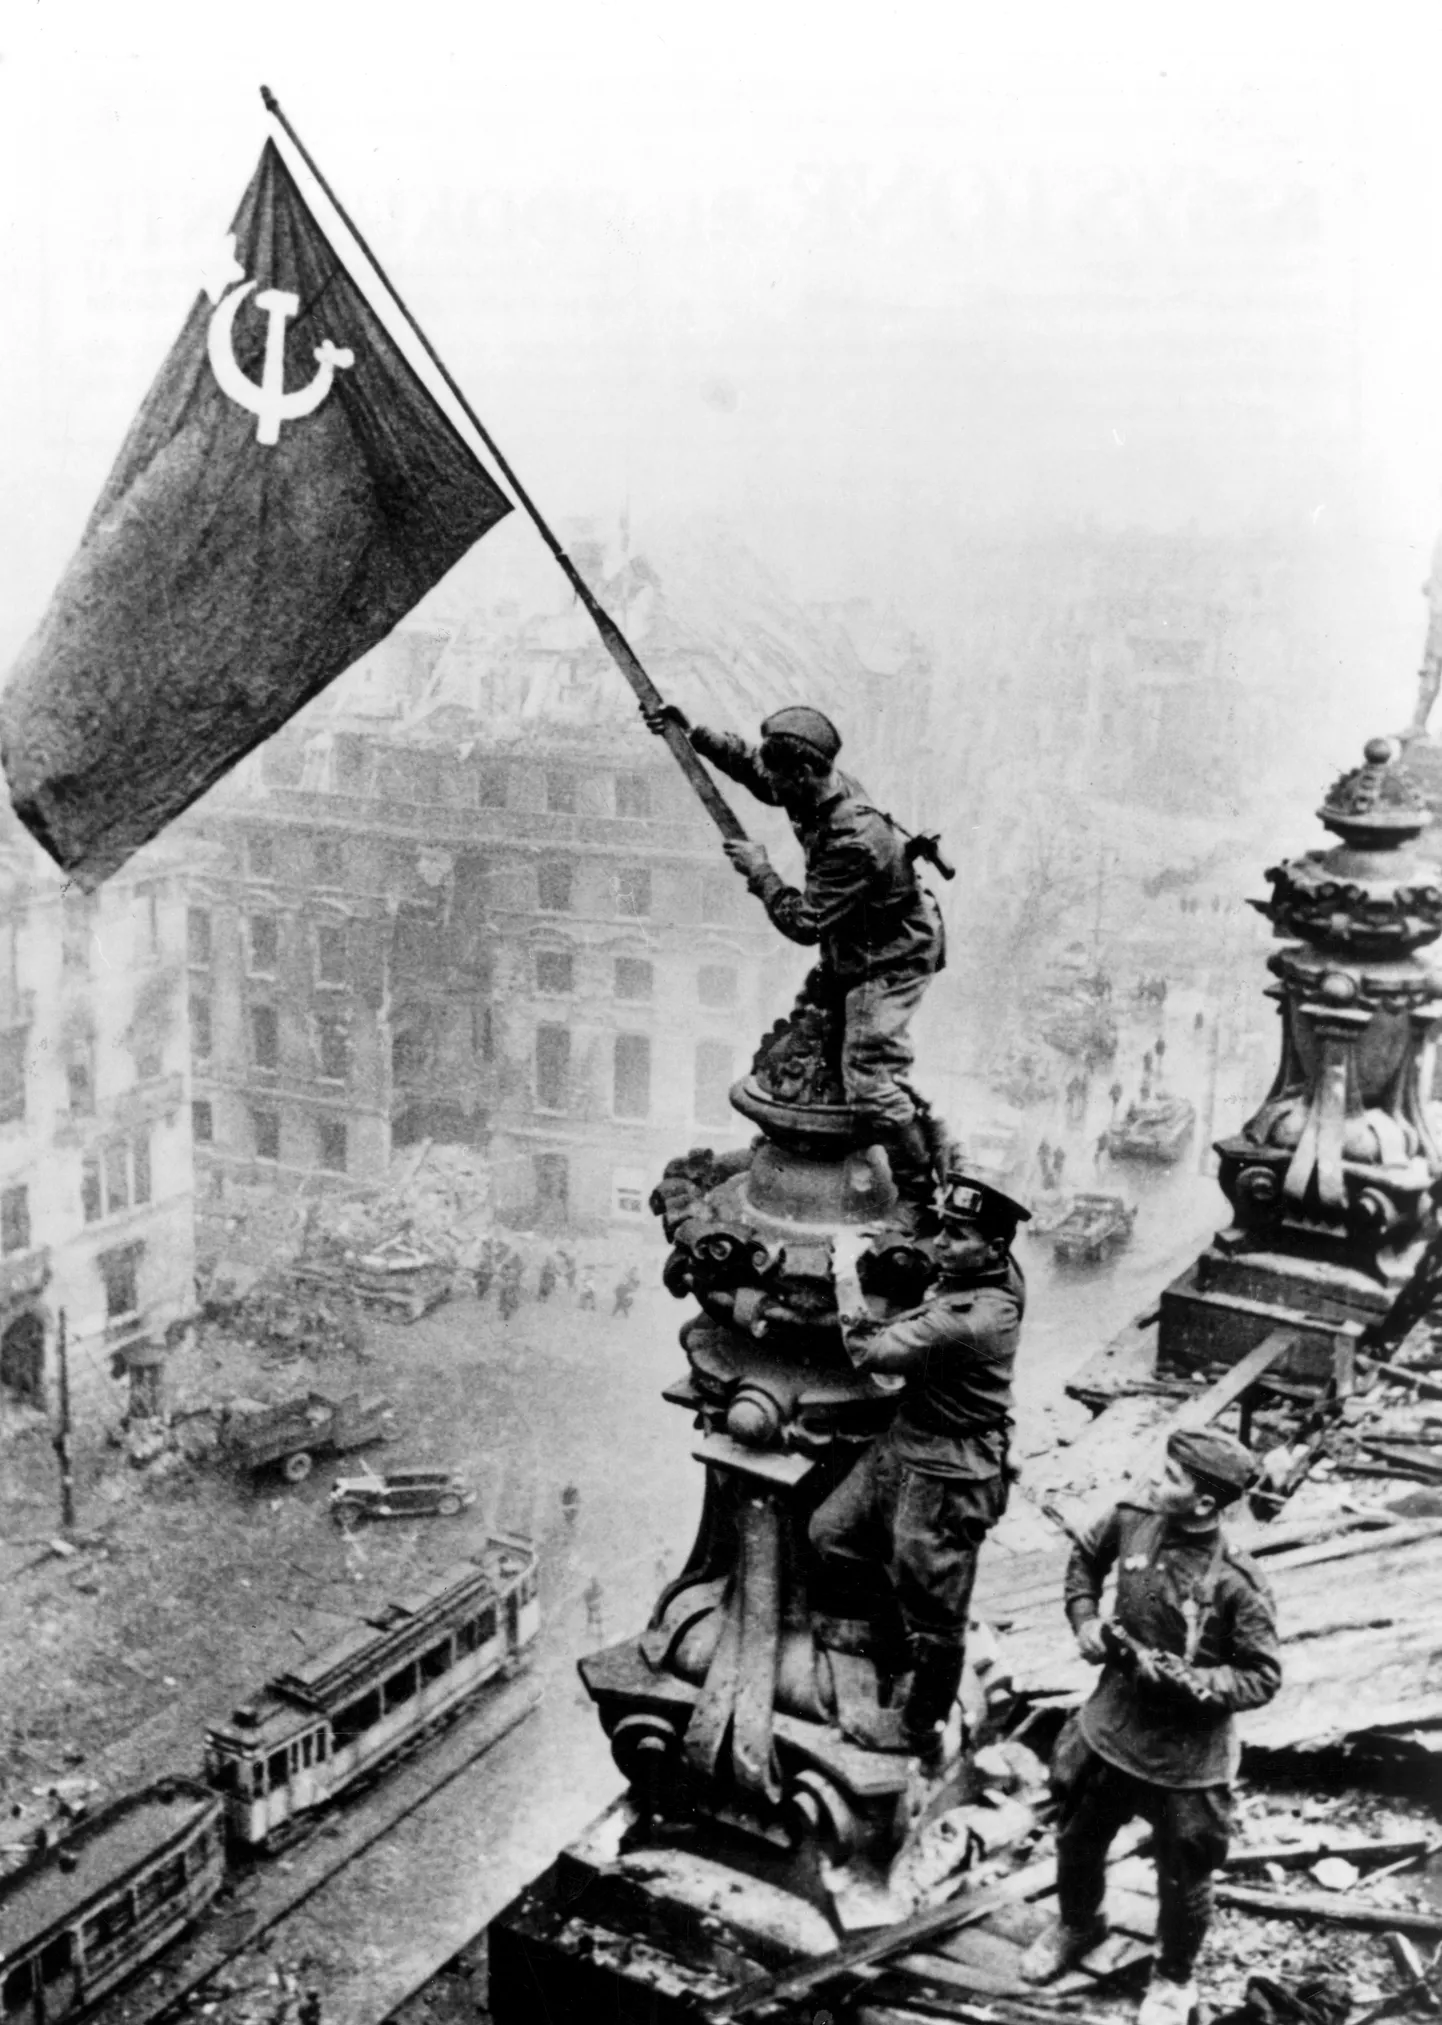 Pilt Saksa Riigipäevale Nõukogude lippu heiskavatest sõduritest muutus samasuguseks propagandasümboliks nagu samast ajastust pärinev foto USA lipu püstitamisest Iwo Jimal.